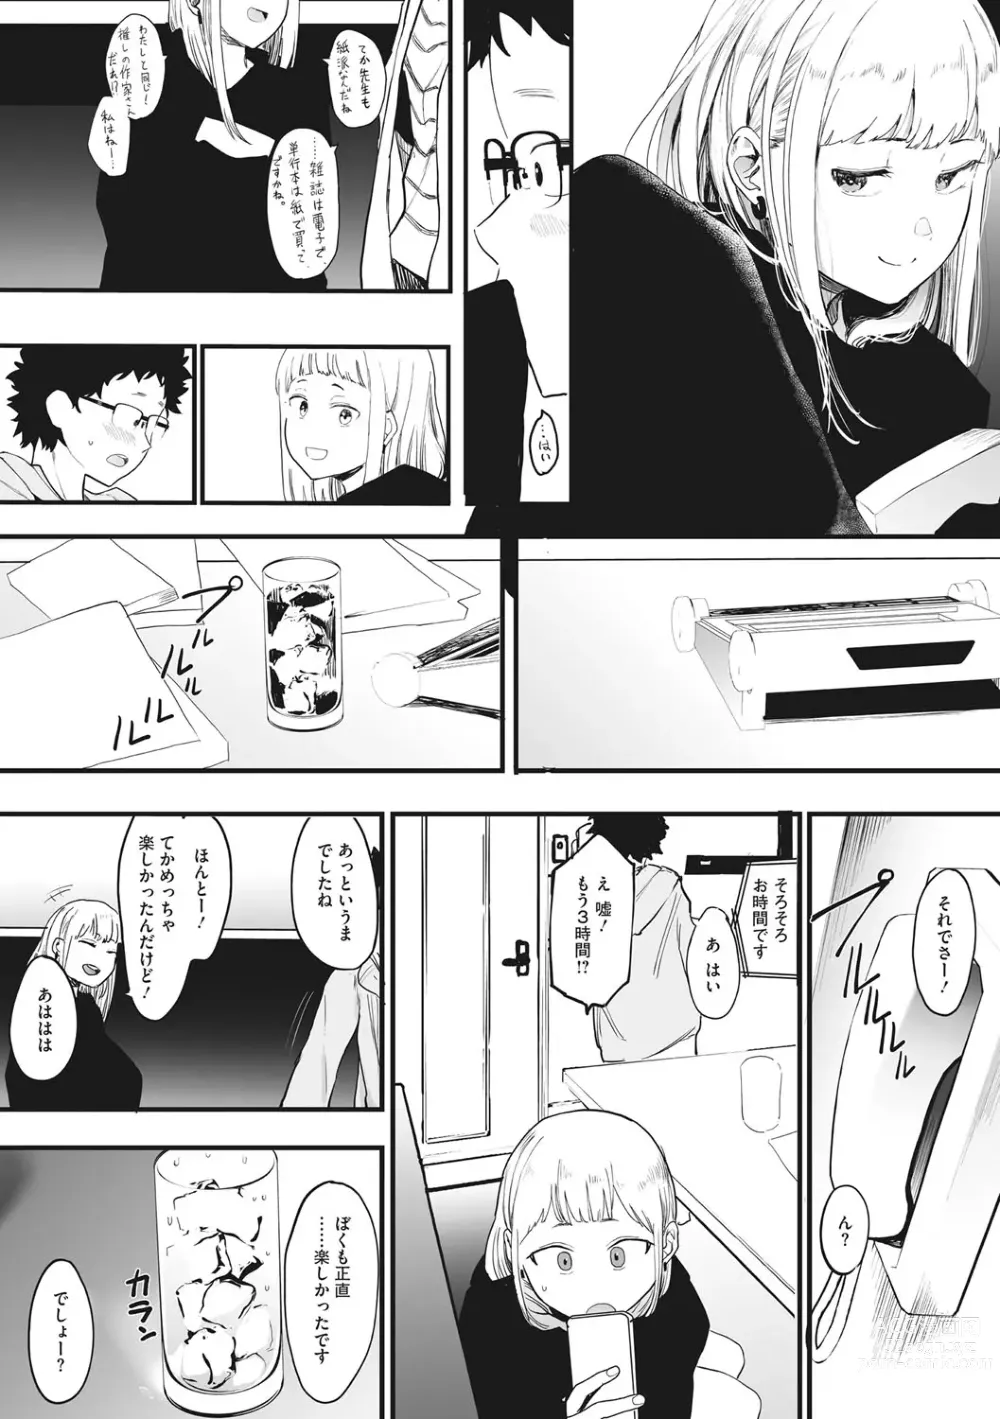 Page 7 of manga Eightman sensei no okagede kanojo ga dekimashita!